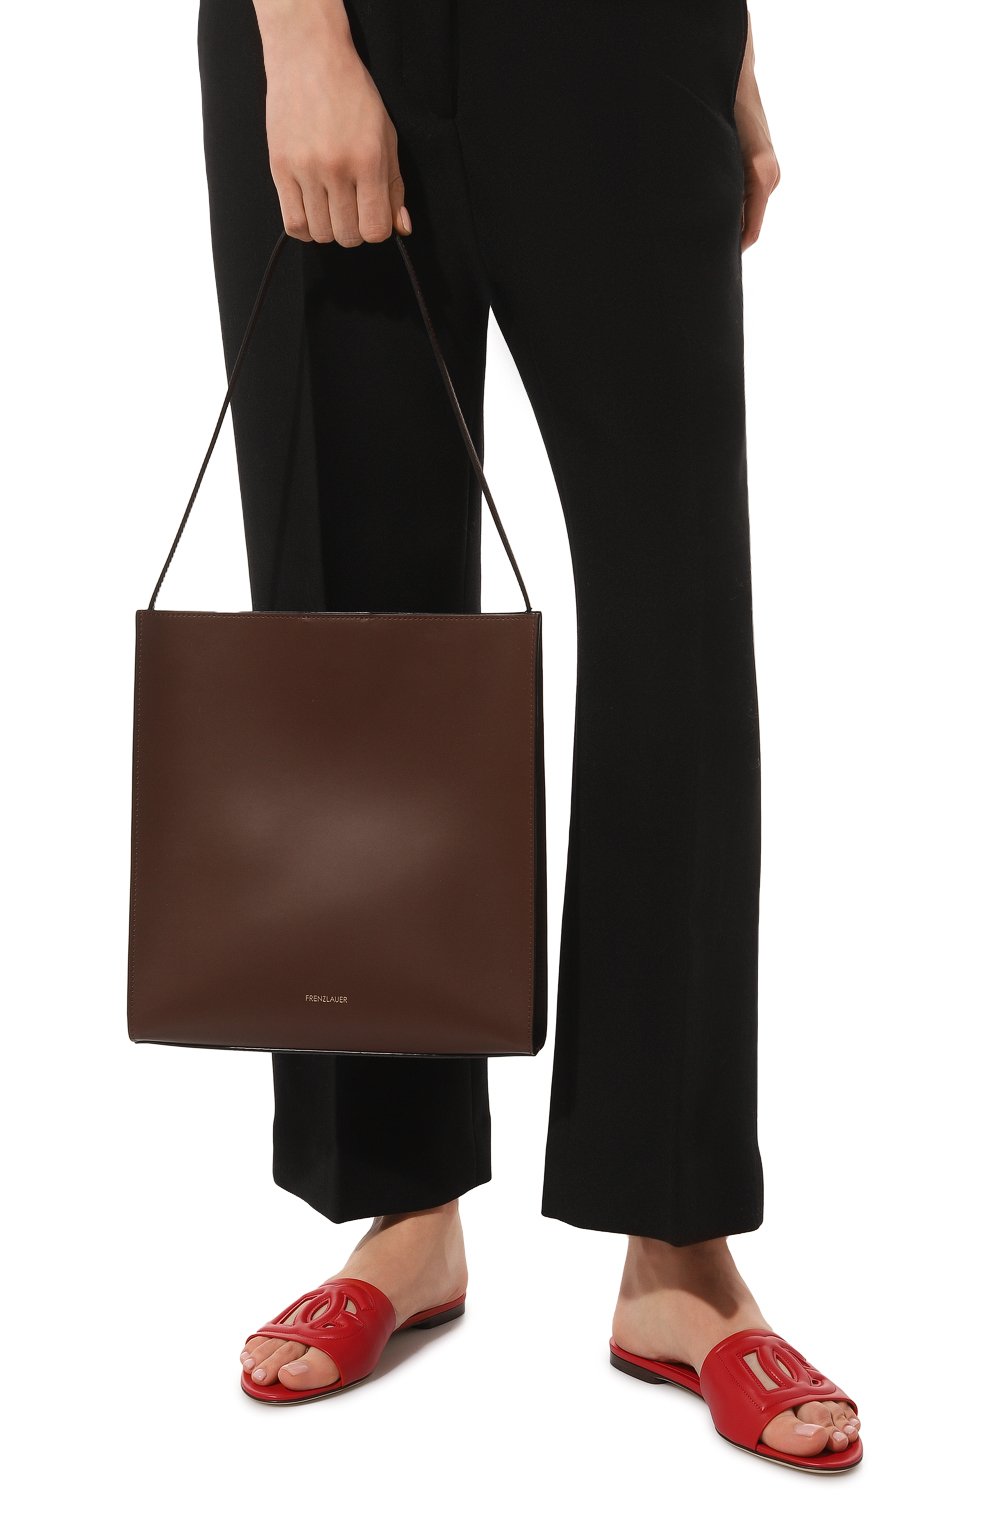 Женский сумка square FRENZLAUER коричневого цвета, арт. SQUARE | Фото 2 (Сумки-технические: Сумки-шопперы; Размер: medium; Материал: Натуральная кожа)